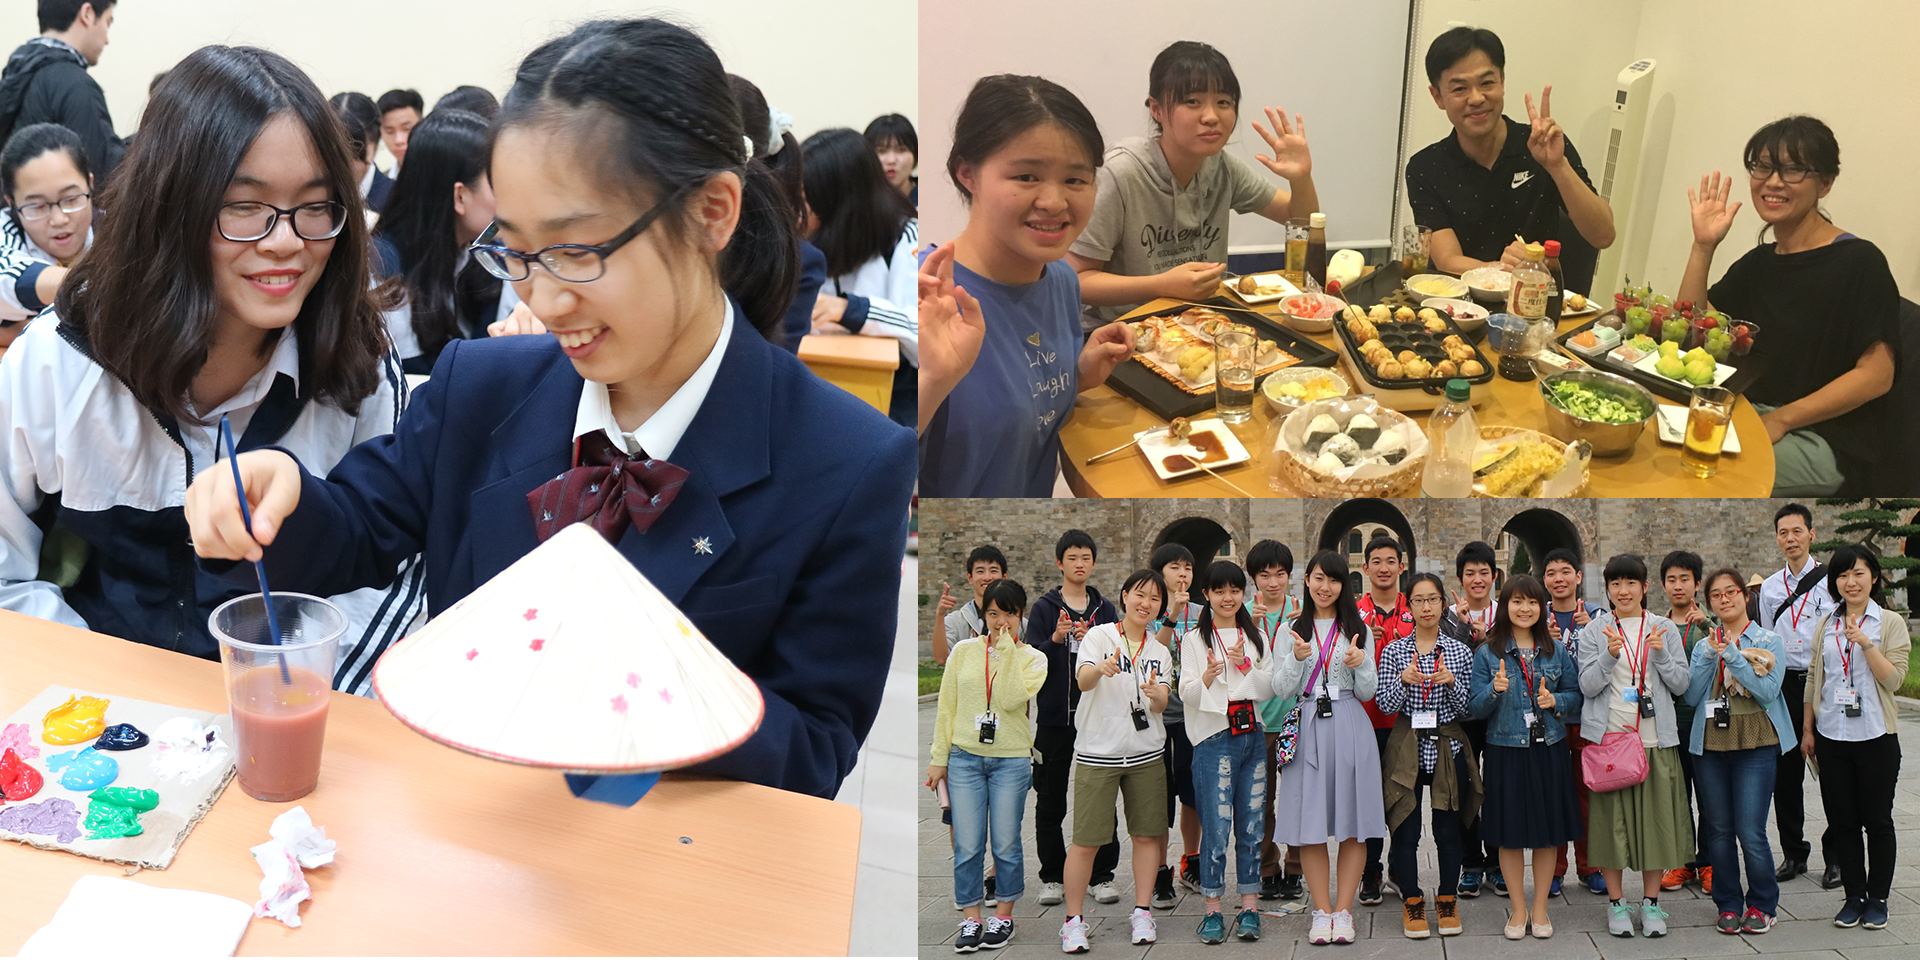 ティーンエイジ アンバサダー 日本と海外の高校生がペアとなり、互いの国を訪問し、国際的な相互理解と親交を深める交流プログラムです。文化や伝統、生活習慣の異なる同世代の若者たちが、「表敬訪問活動」「交流活動」「歴史・文化活動」の３つの活動を通じて交流します。同事業は、１９９０年より毎年実施しており、これまでに日本を含めた１８カ国２,４２１名が参加しています。